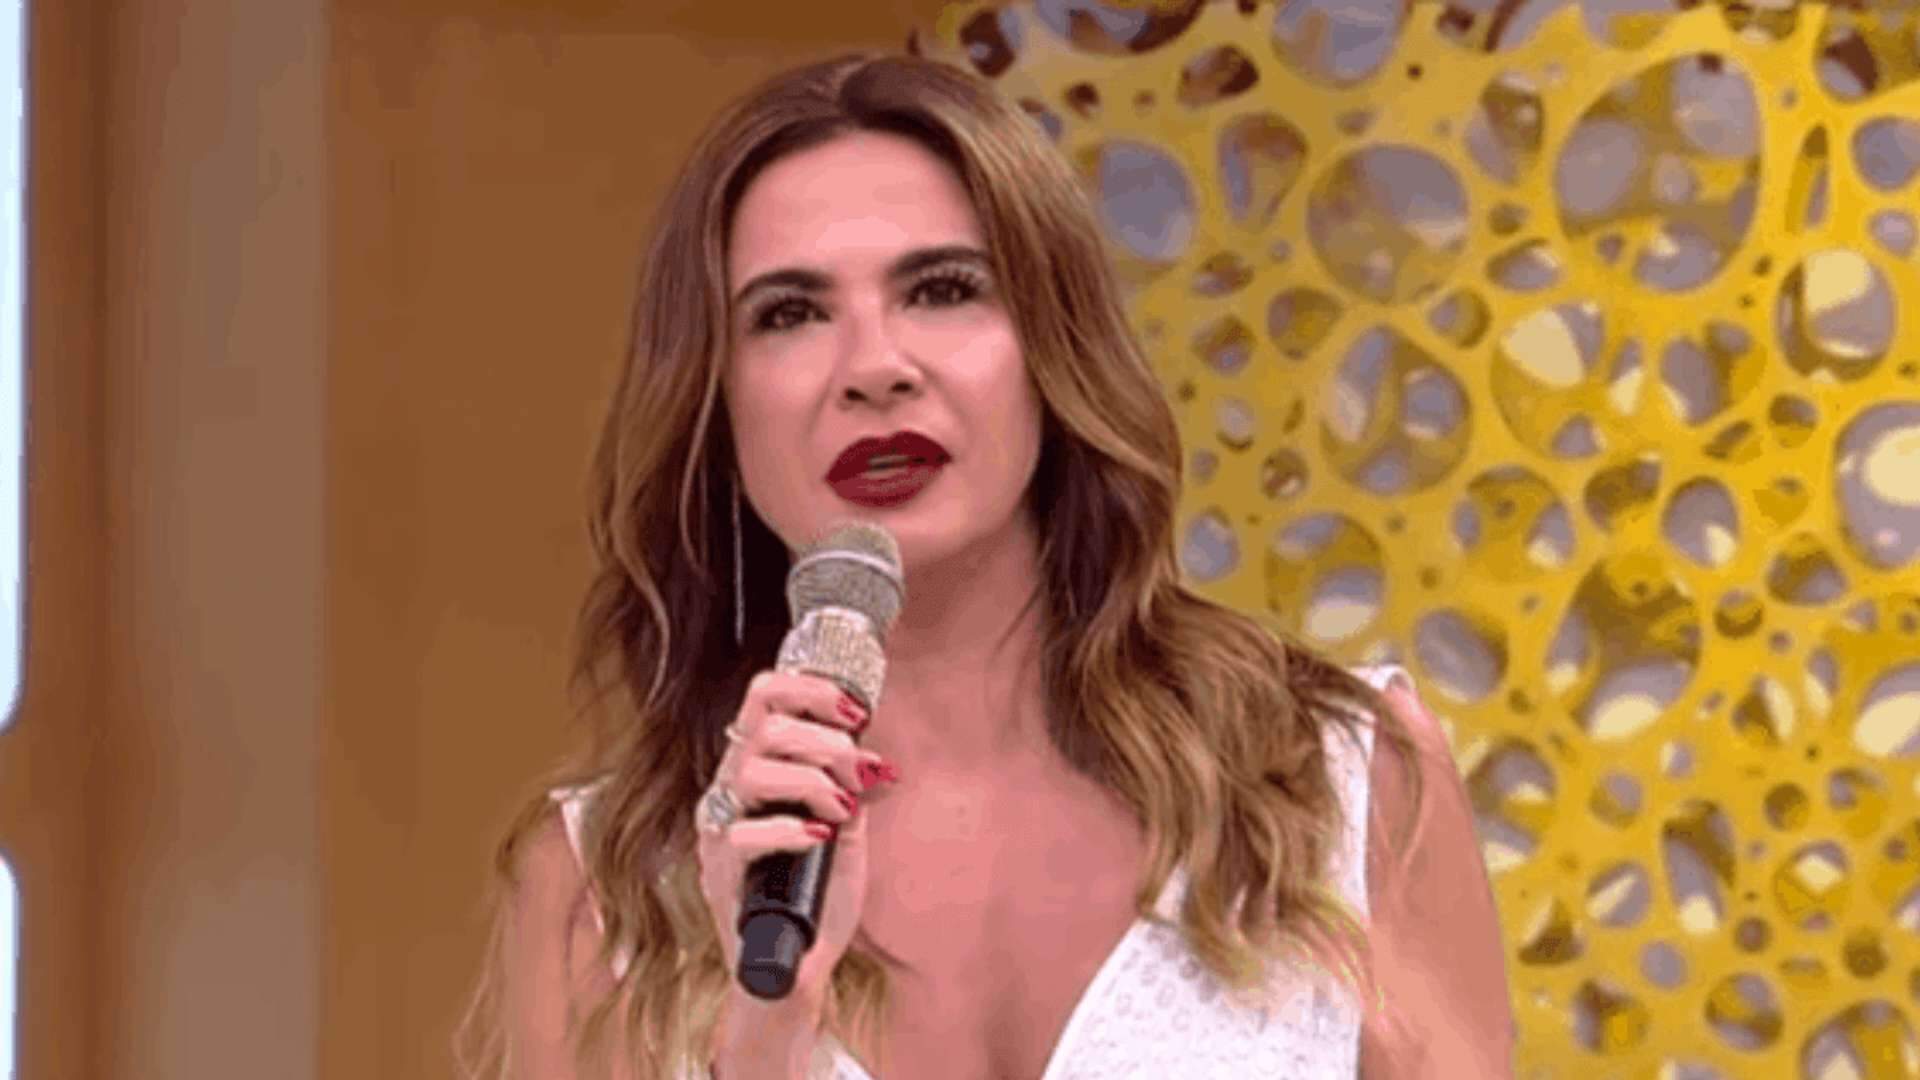 Possuída ao vivo? Luciana Gimenez relembra situação chocante durante debate religiosos - Metropolitana FM